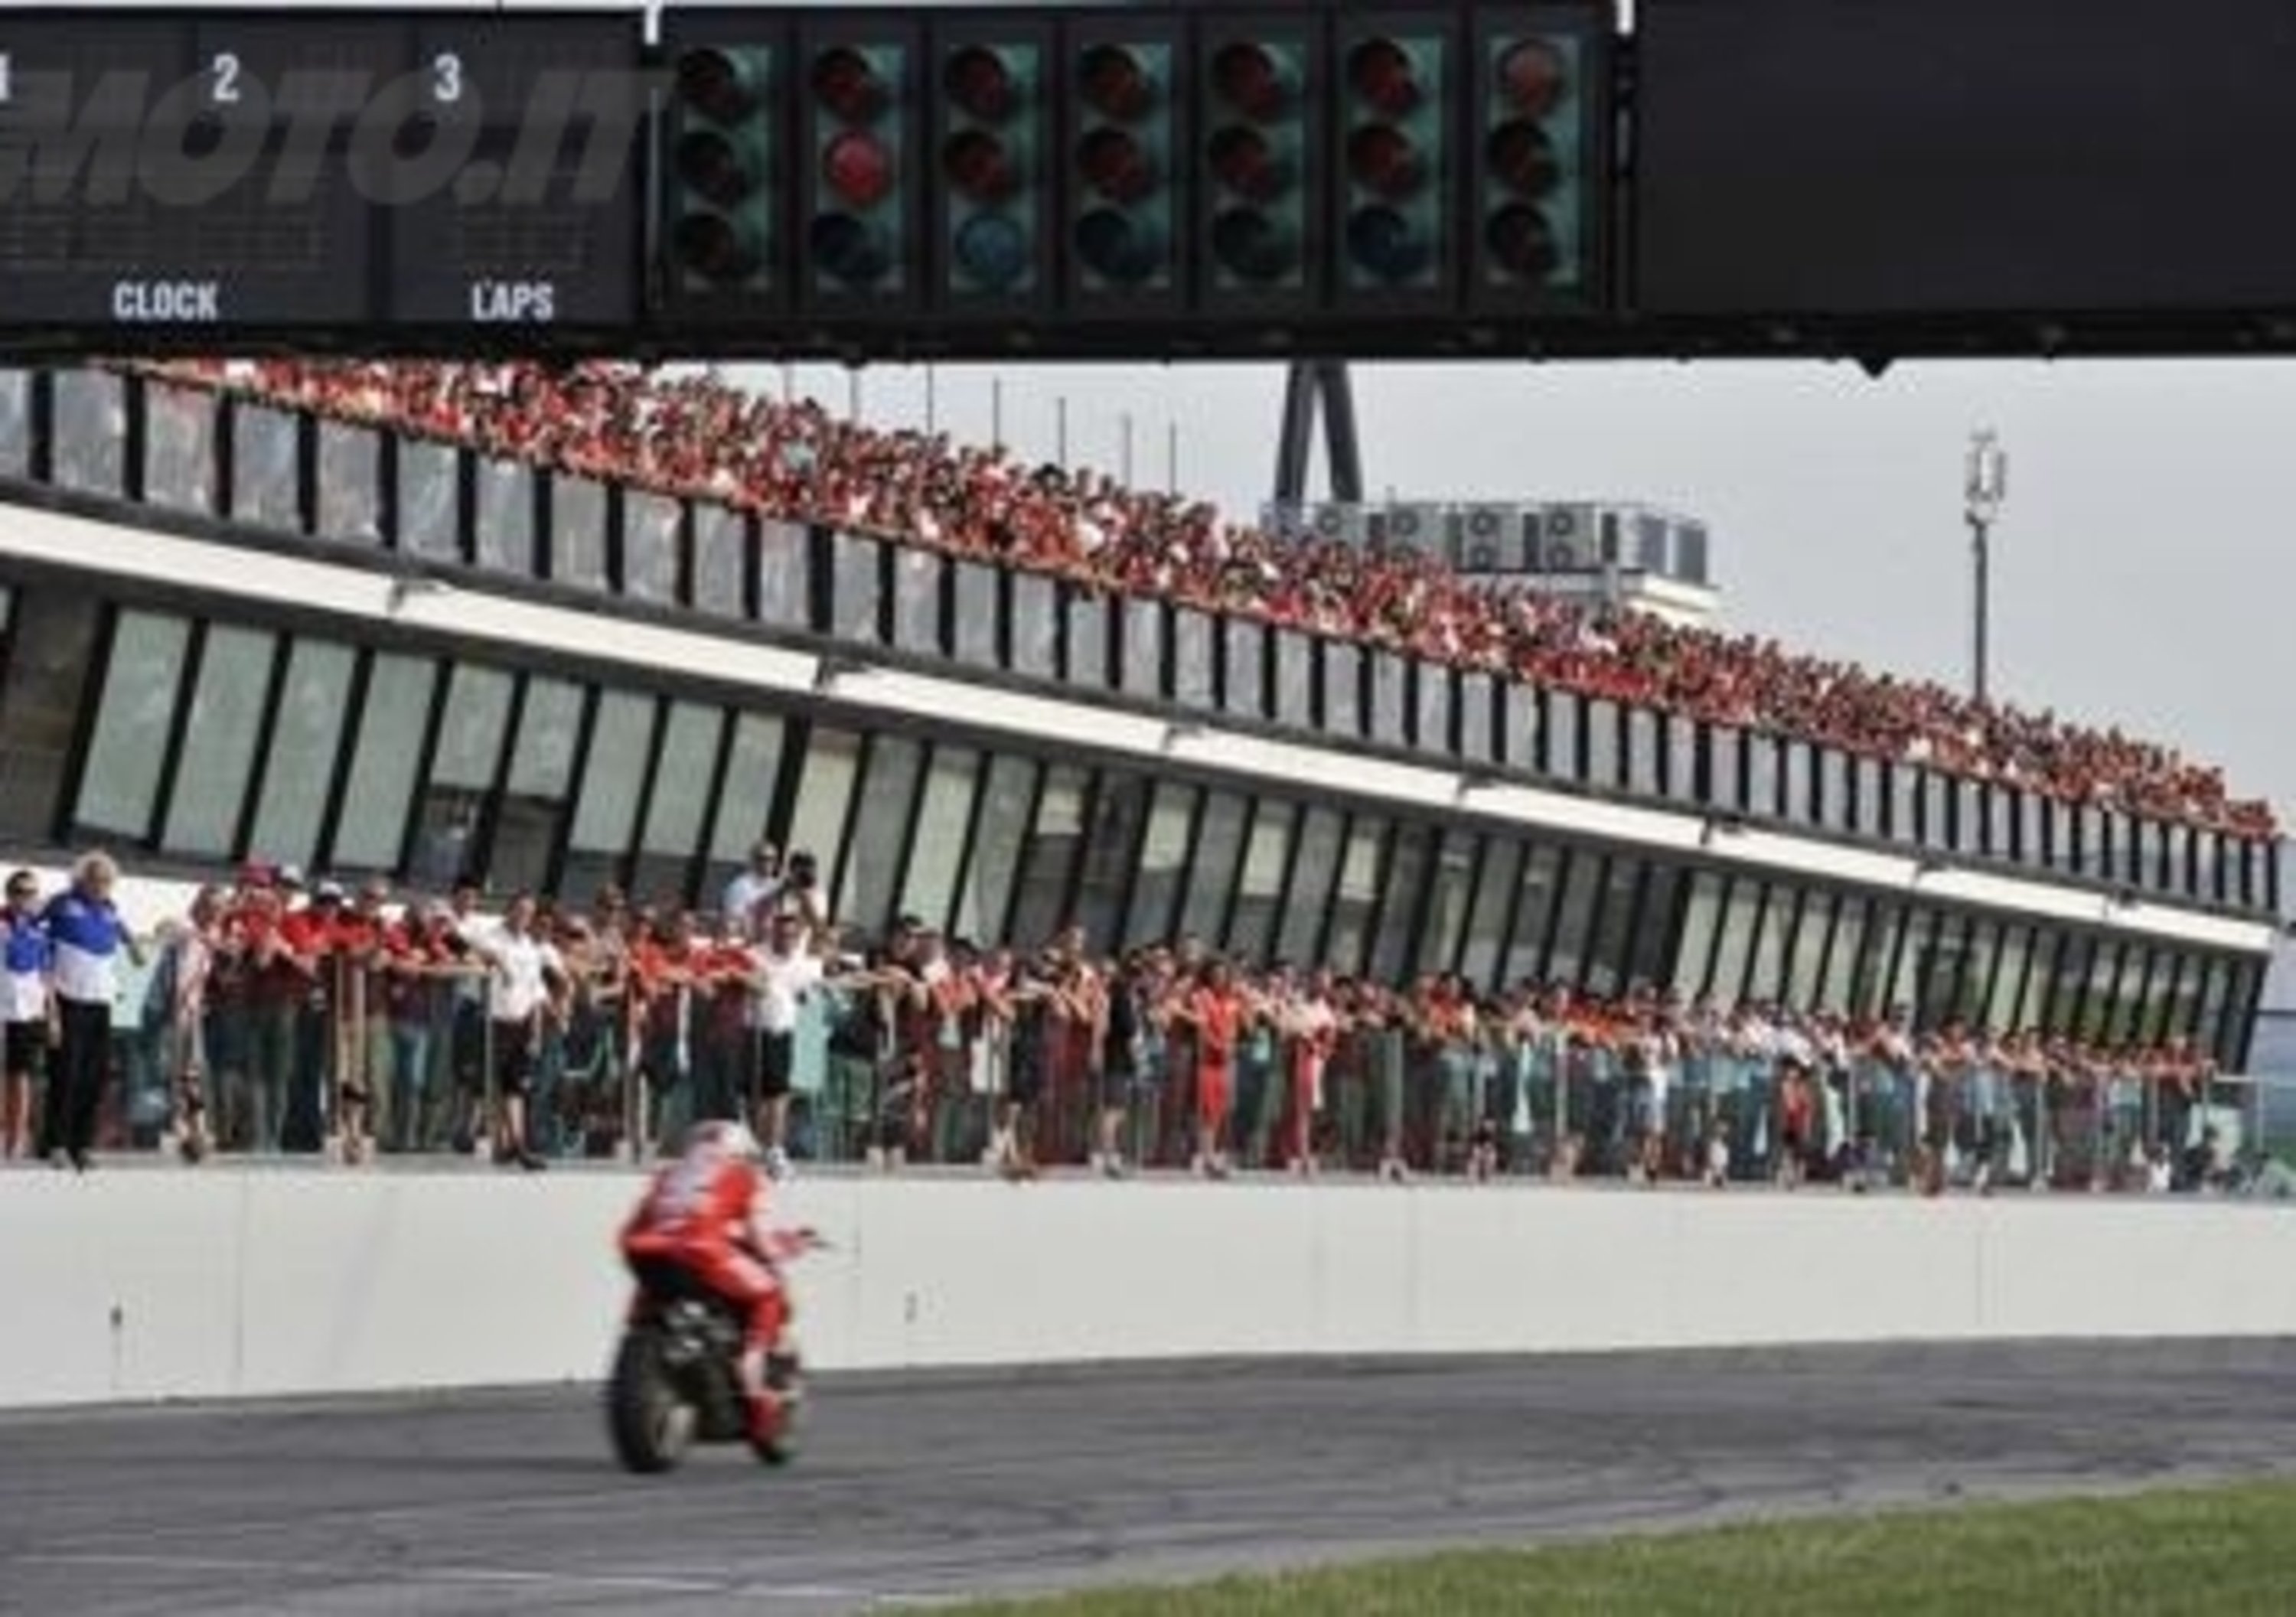 Al WDW 2012 i piloti Ducati si sfidano in gara